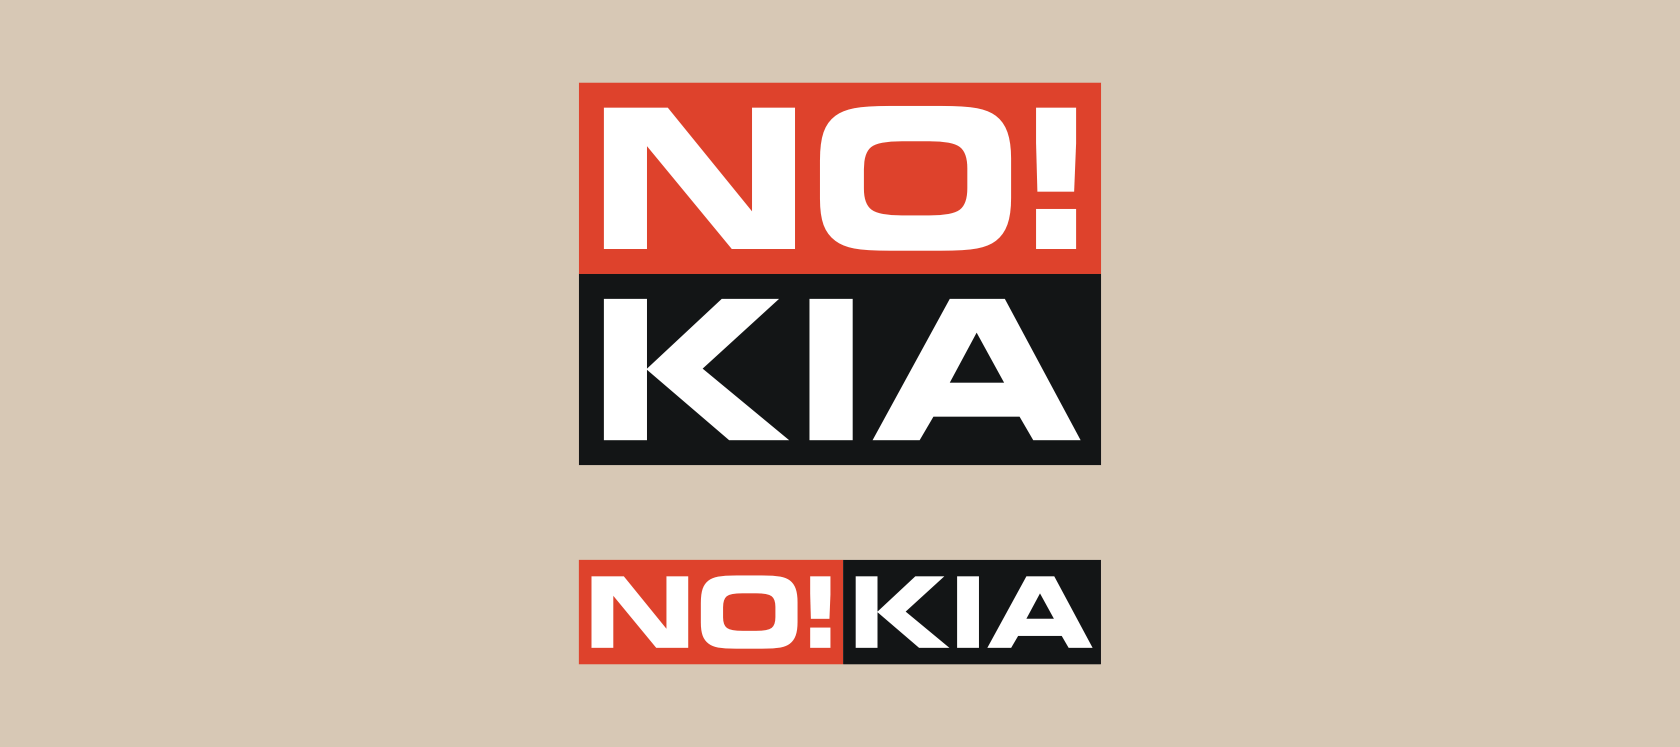 Logo - No!kia